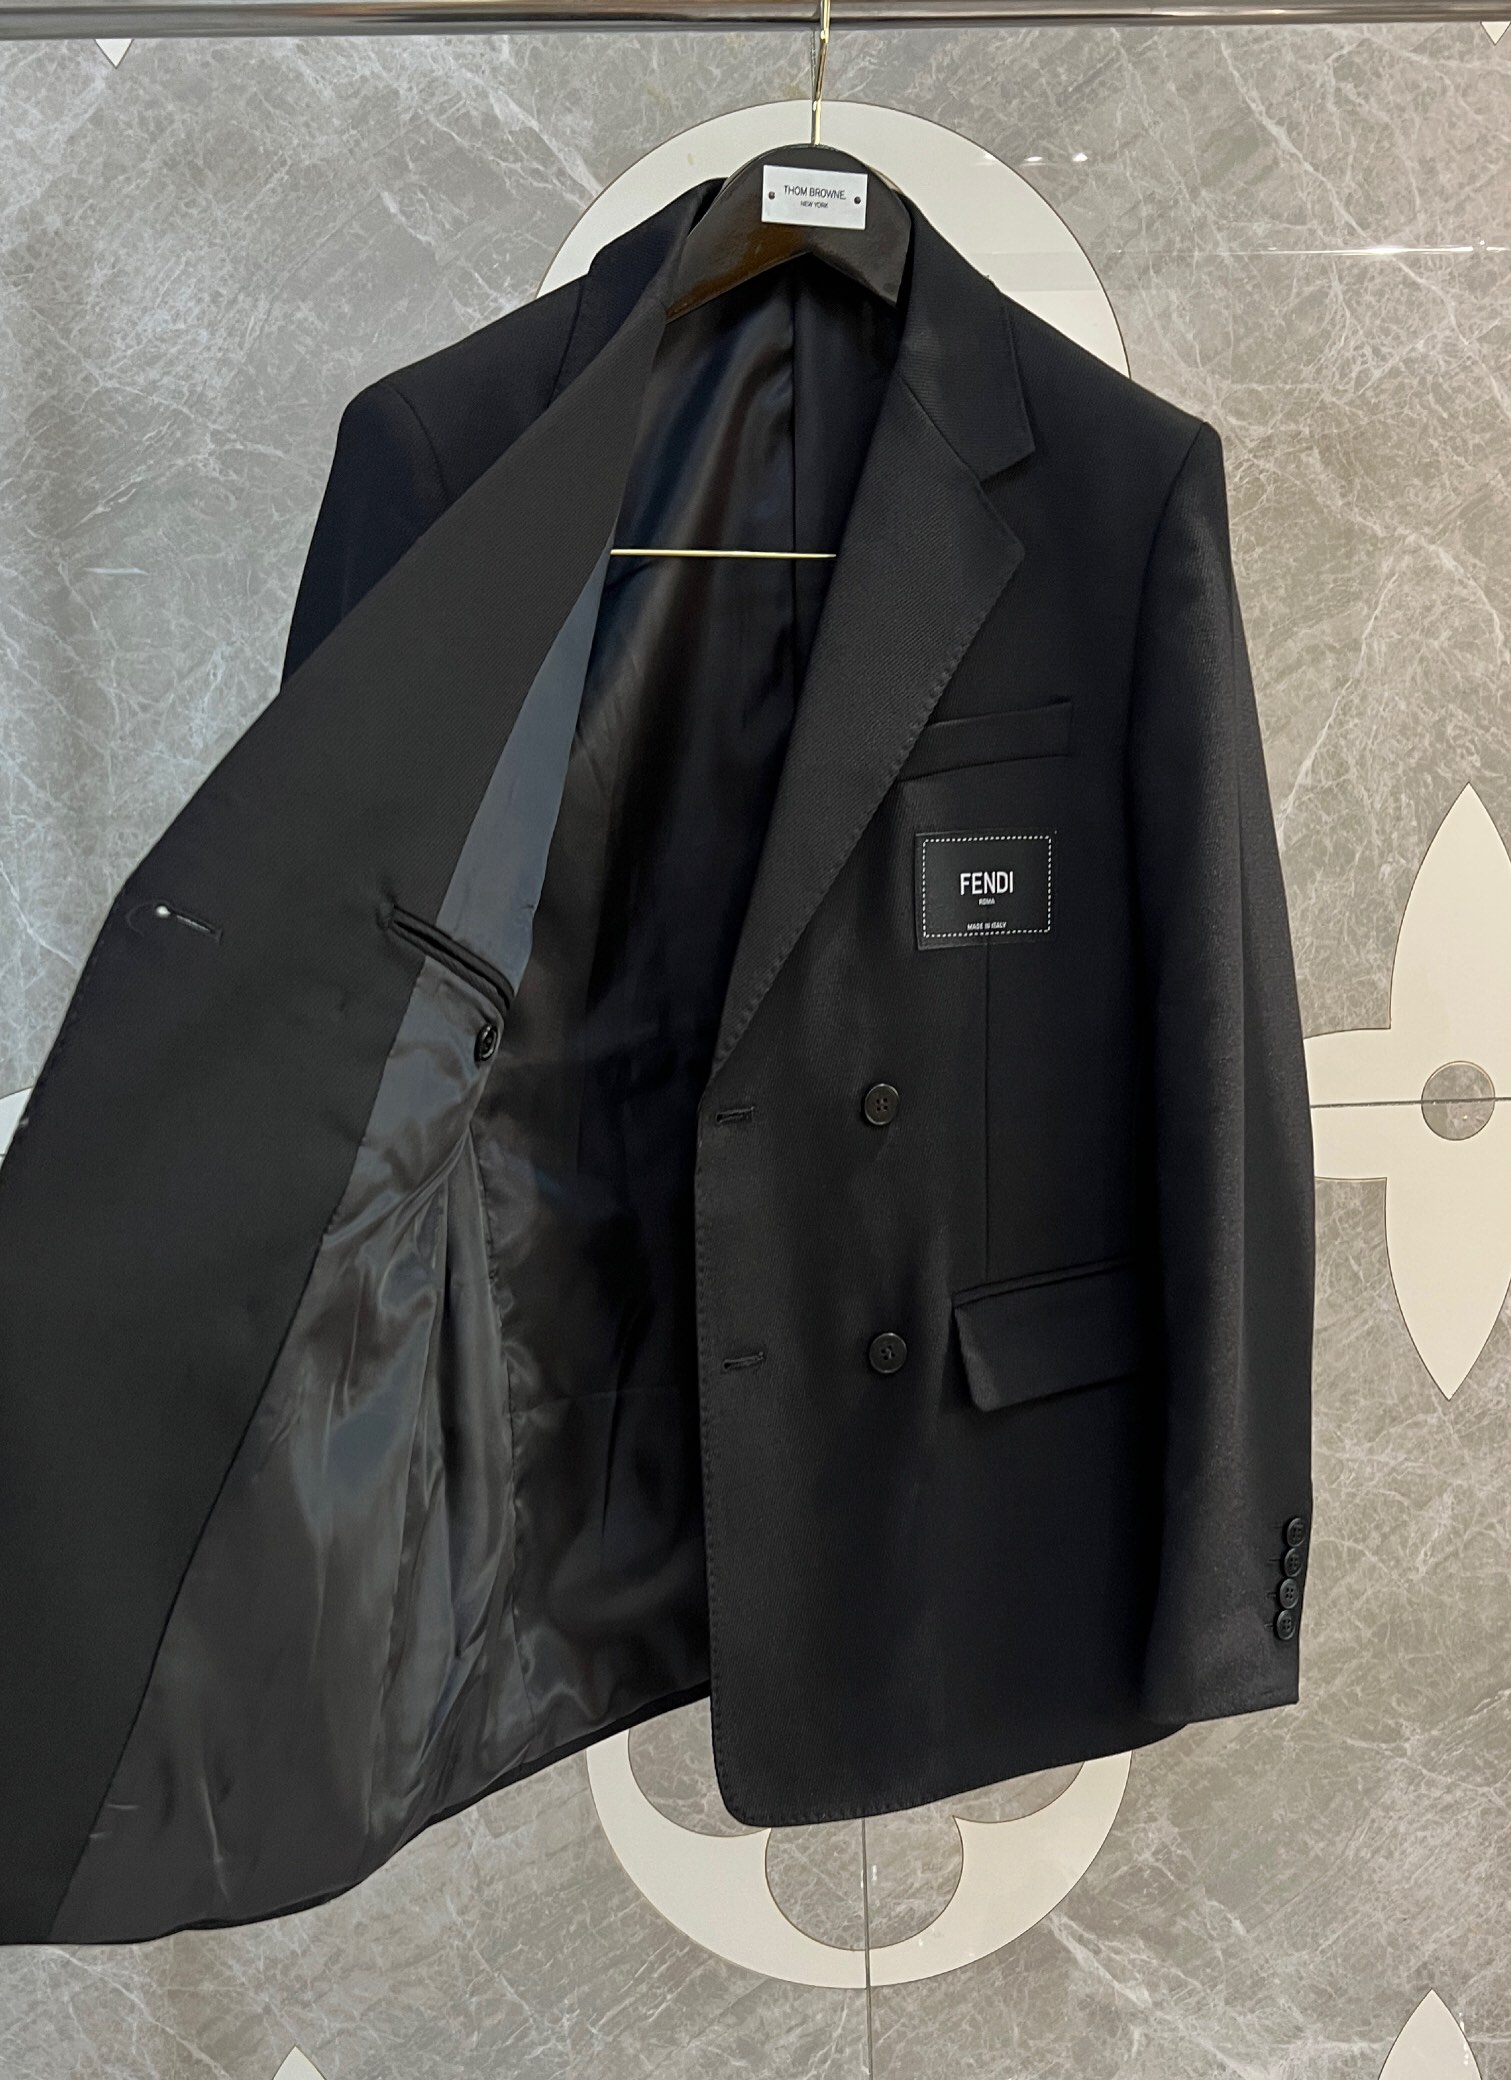 Fendi Business Suit